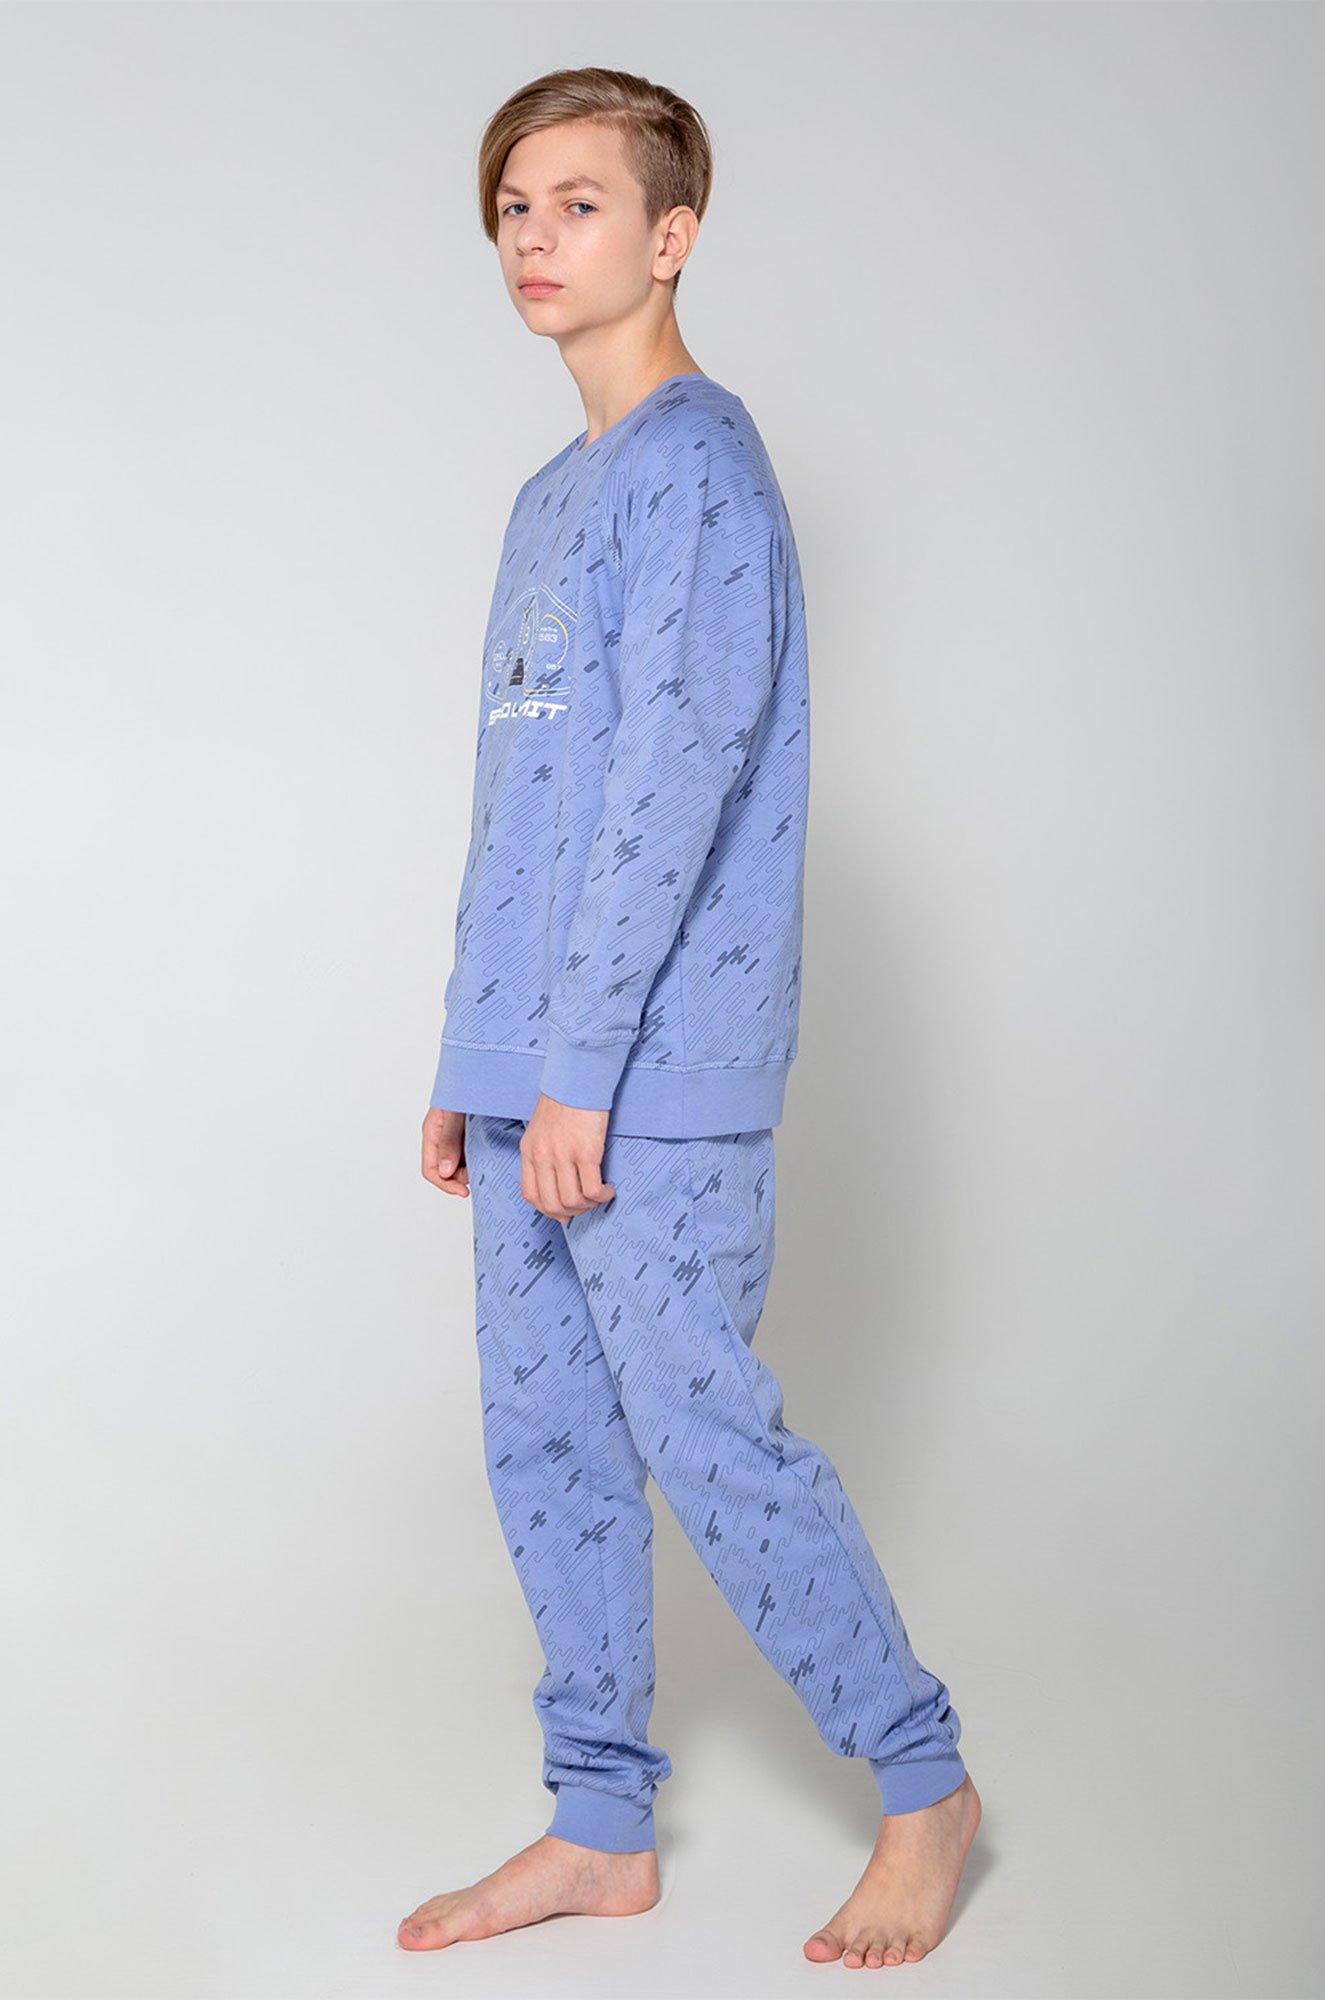 Пижама из петельчатого футера для мальчика Cubby